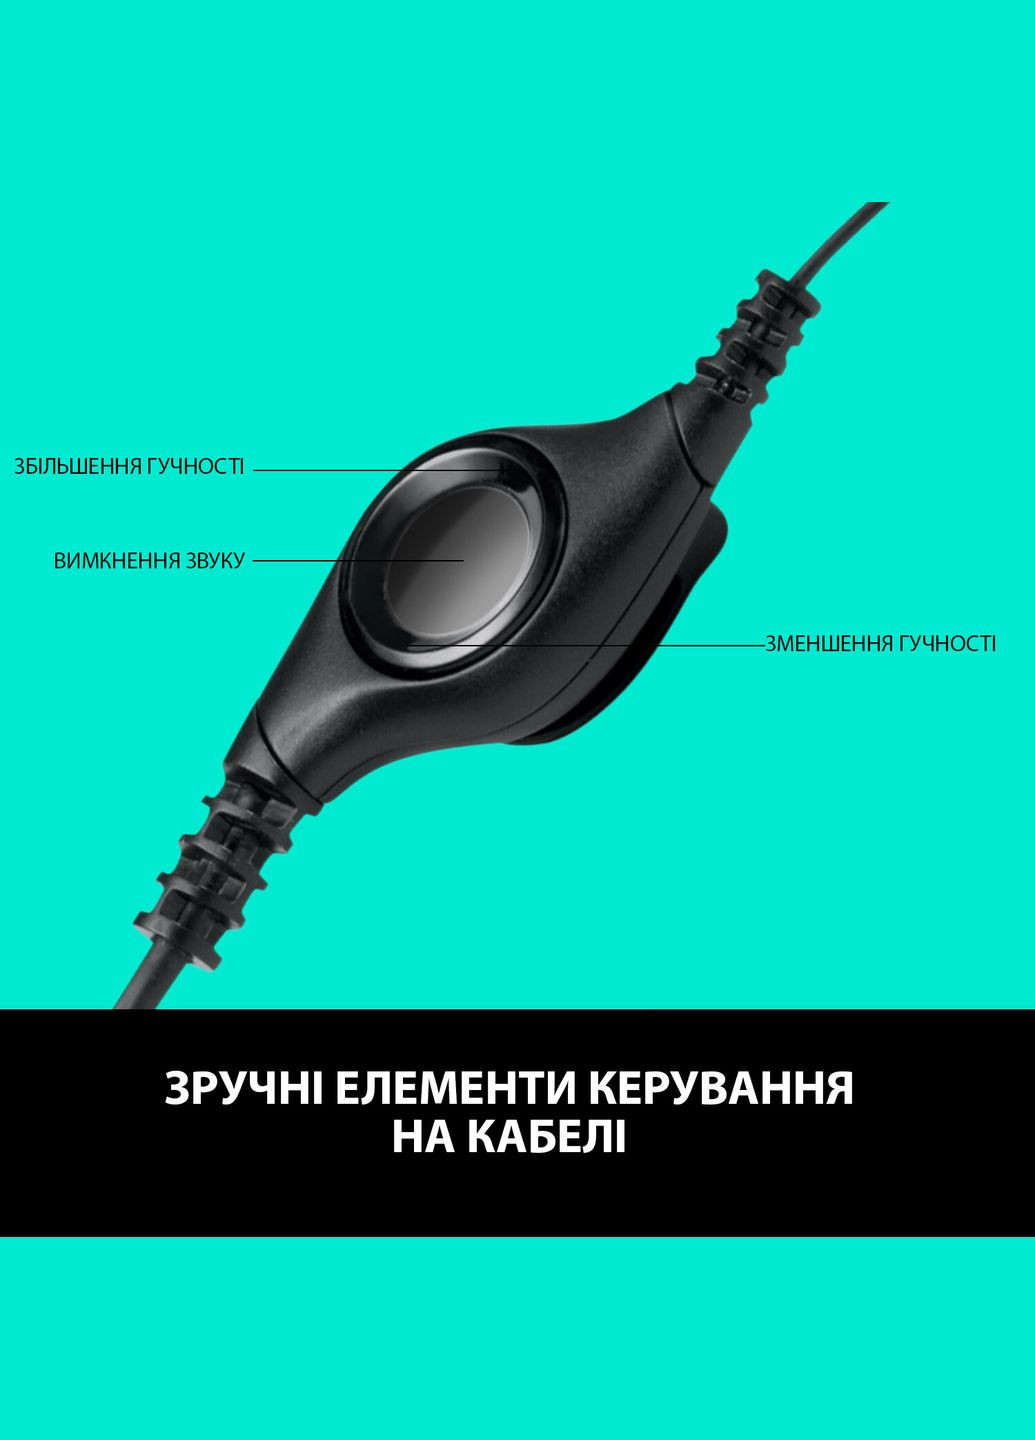 Навушники з мікрофоном H390 USB Black (981000406) Logitech (276842363)